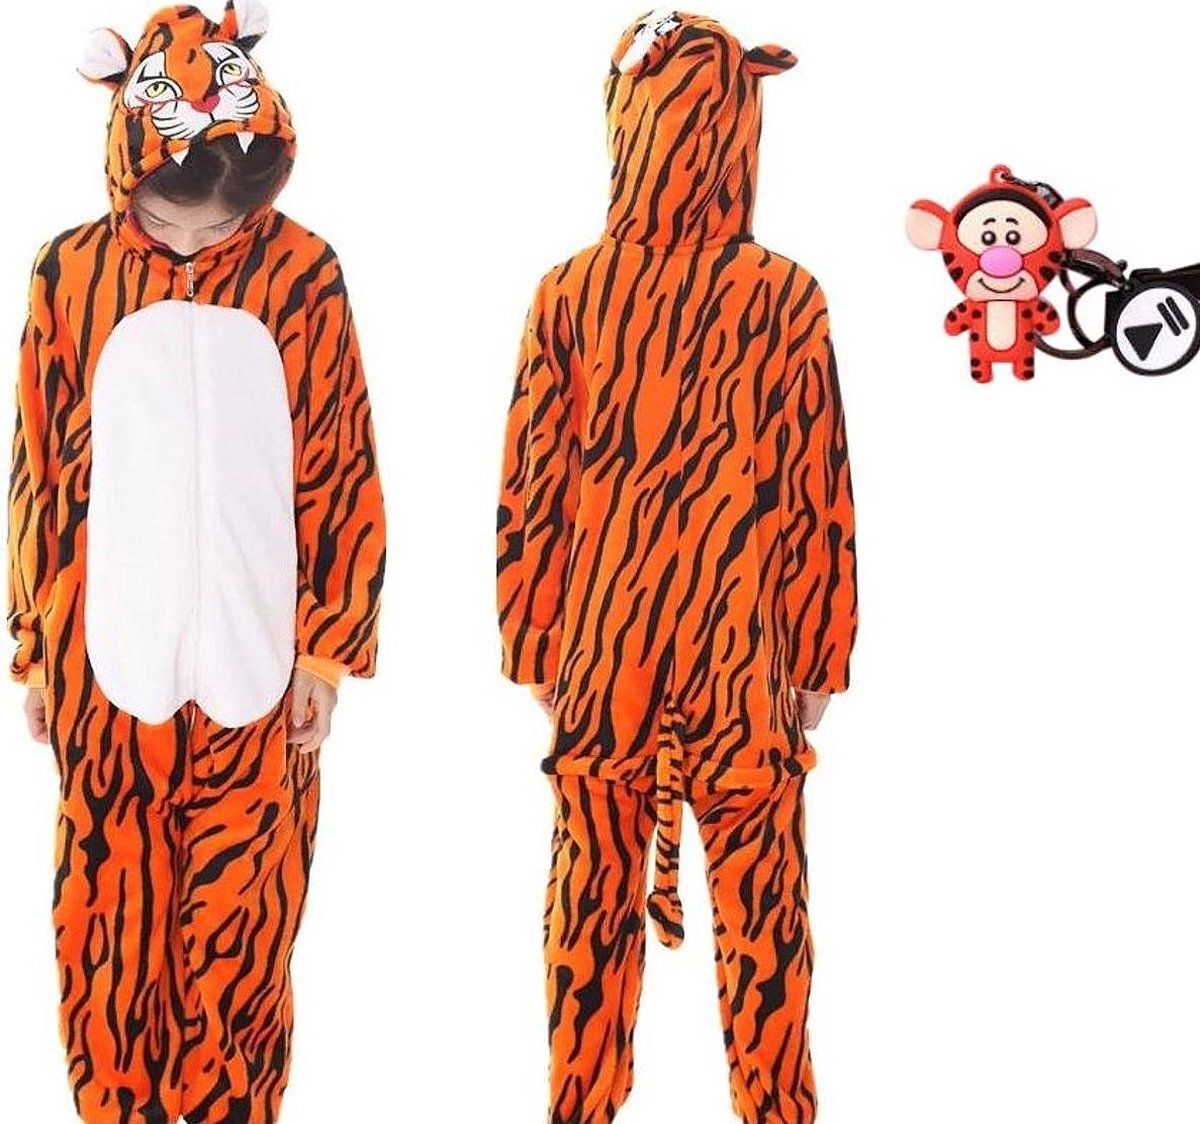 Onesie Teigetje huispak tijger kostuum jumpsuit pyjama kinderen - 116-122 (120) + GRATIS tas/sleutelhanger verkleedkleding